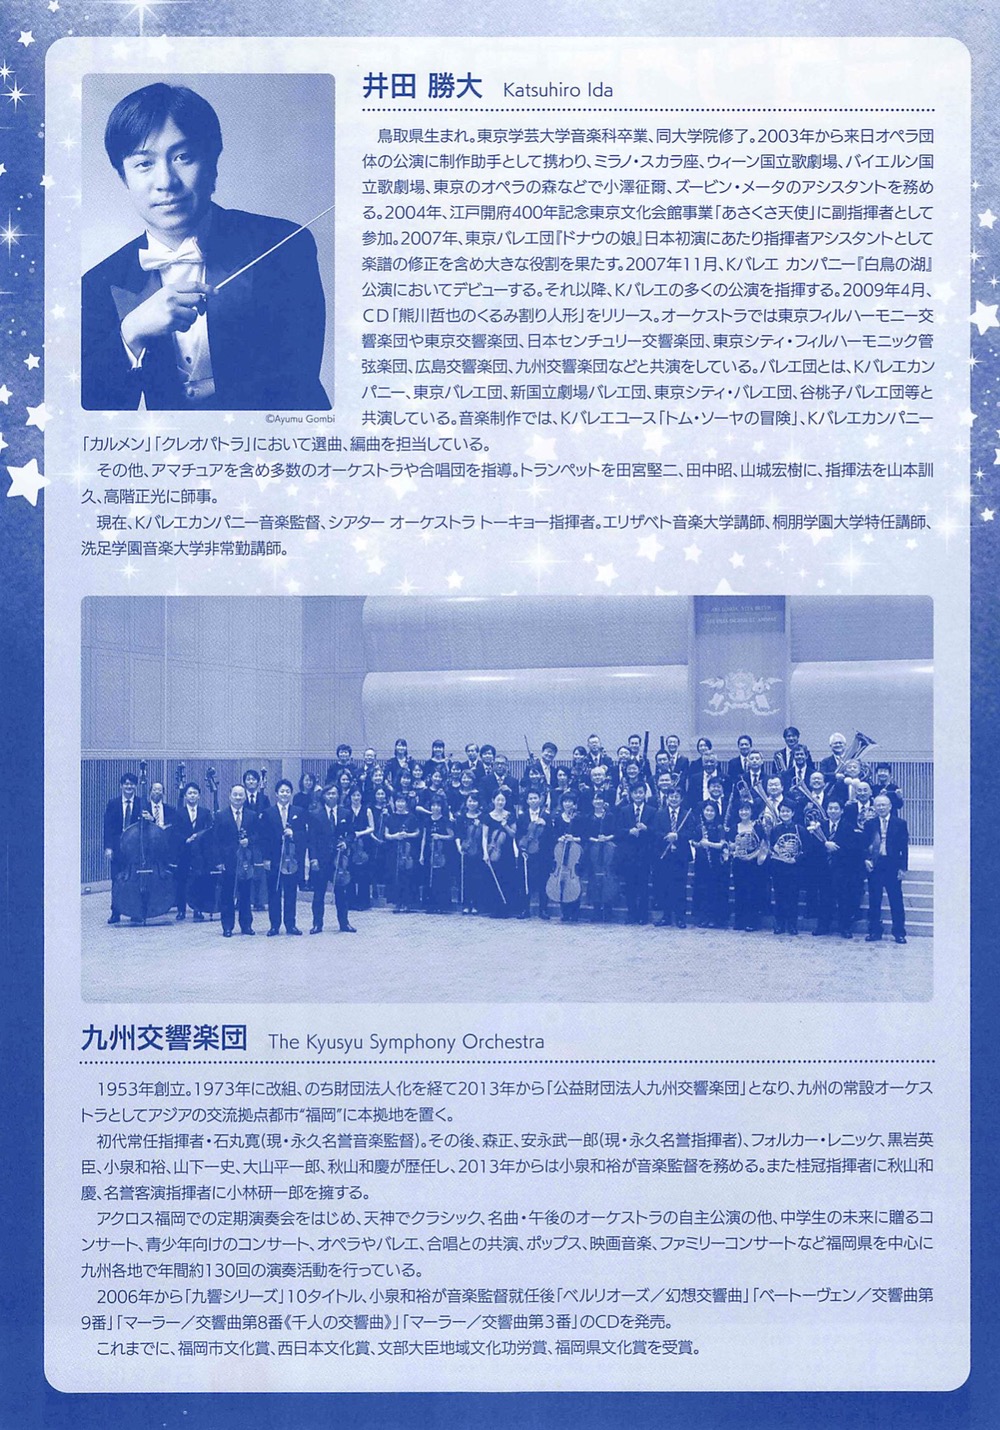 ドラゴンクエストコンサート 久留米市石橋文化ホールにて開催 九州交響楽団